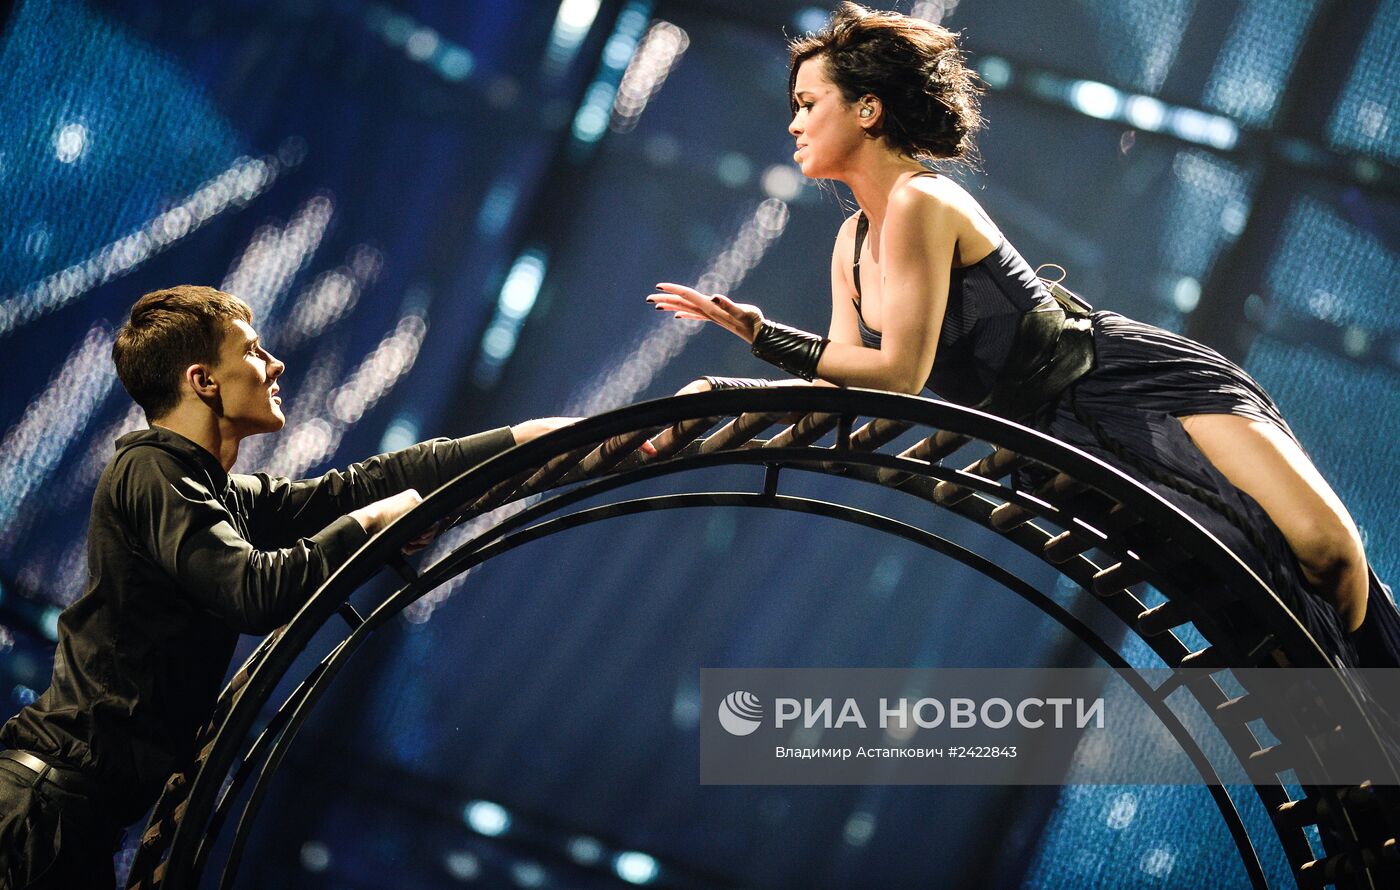 Репетиция полуфинала международного конкурса песни "Евровидение-2014"